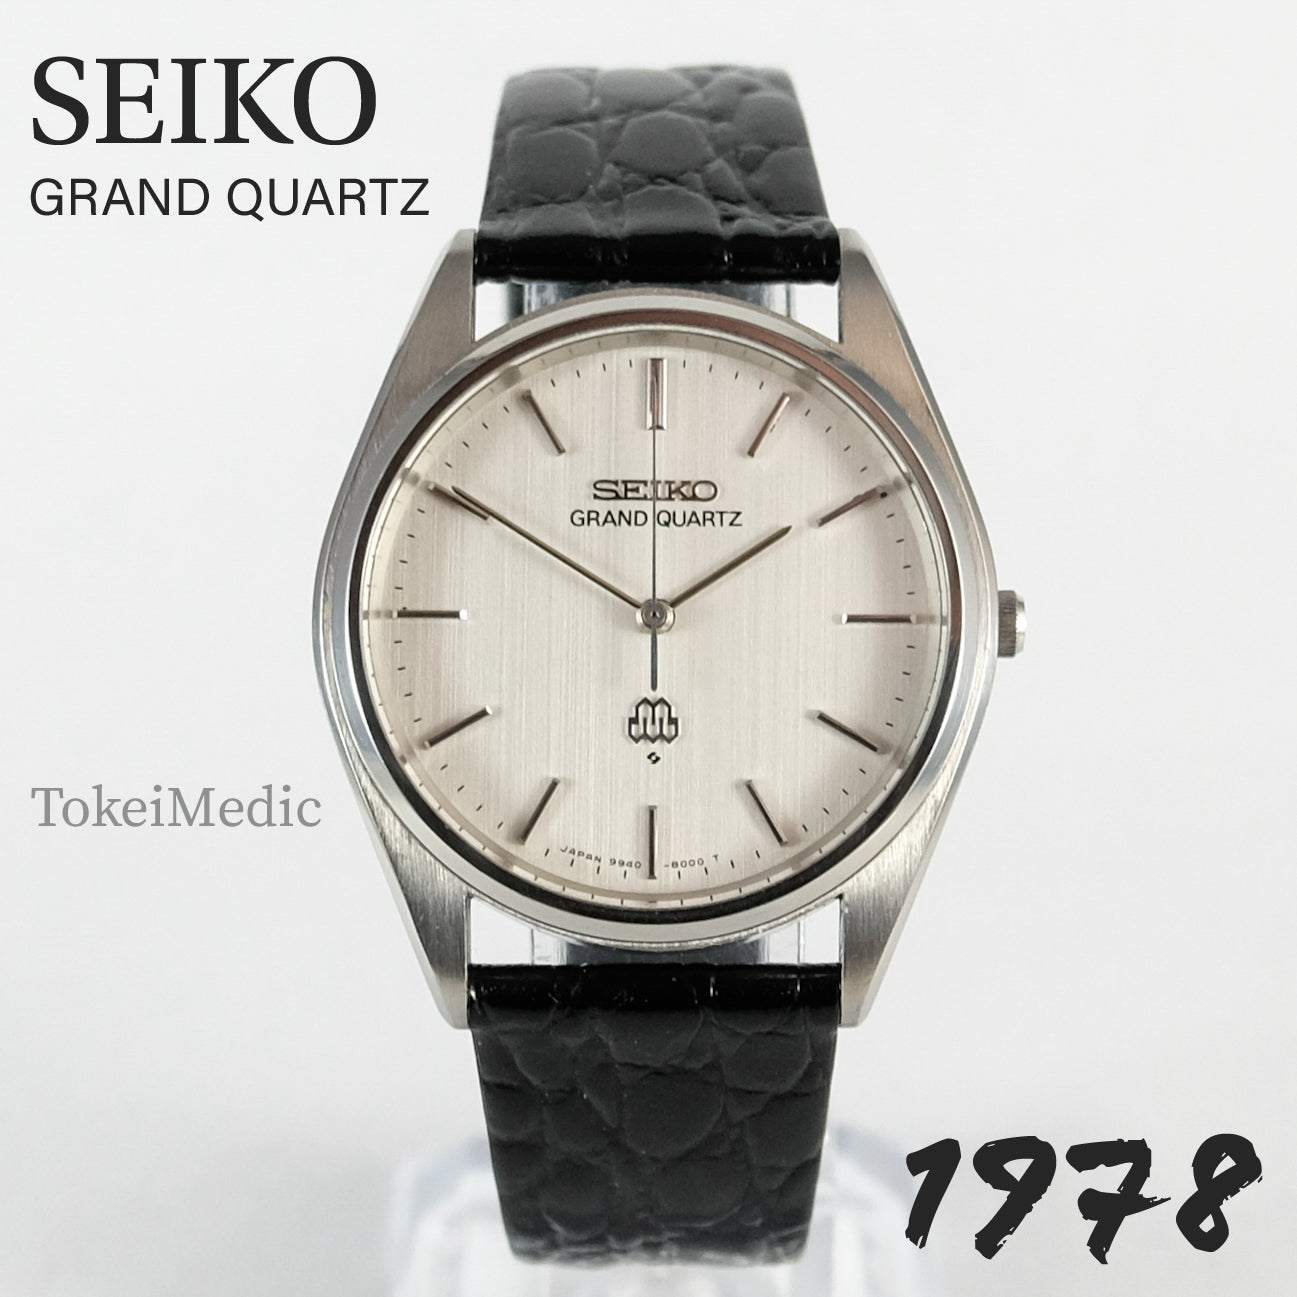 1978 Seiko Grand Quartz 9940-8000